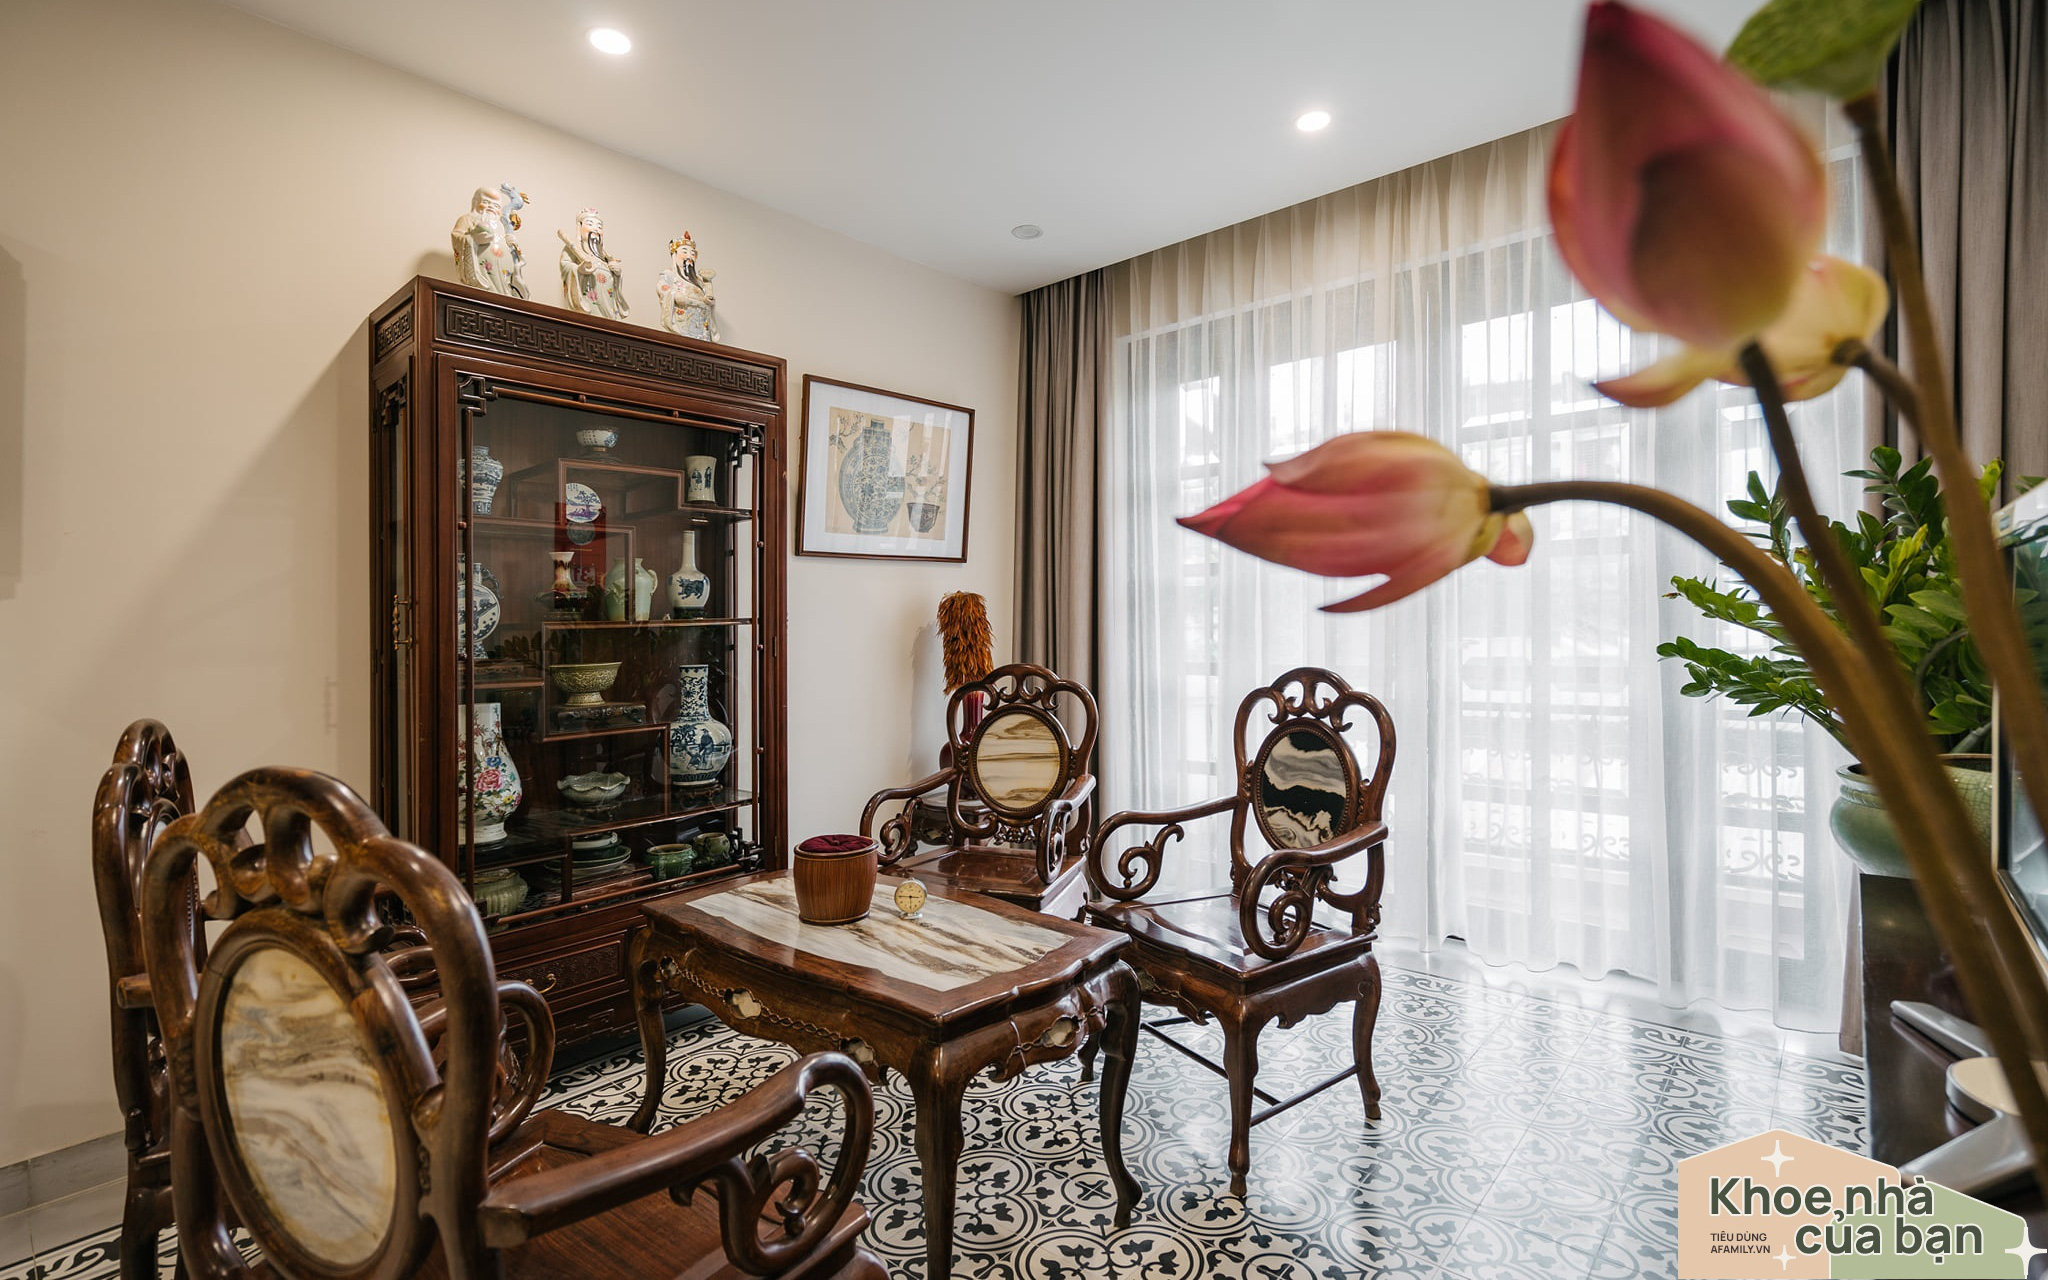 Ngôi nhà của "miền ký ức" được xây dựng từ lòng hiếu thảo của con trai dành cho bố mẹ ở Long Biên, Hà Nội